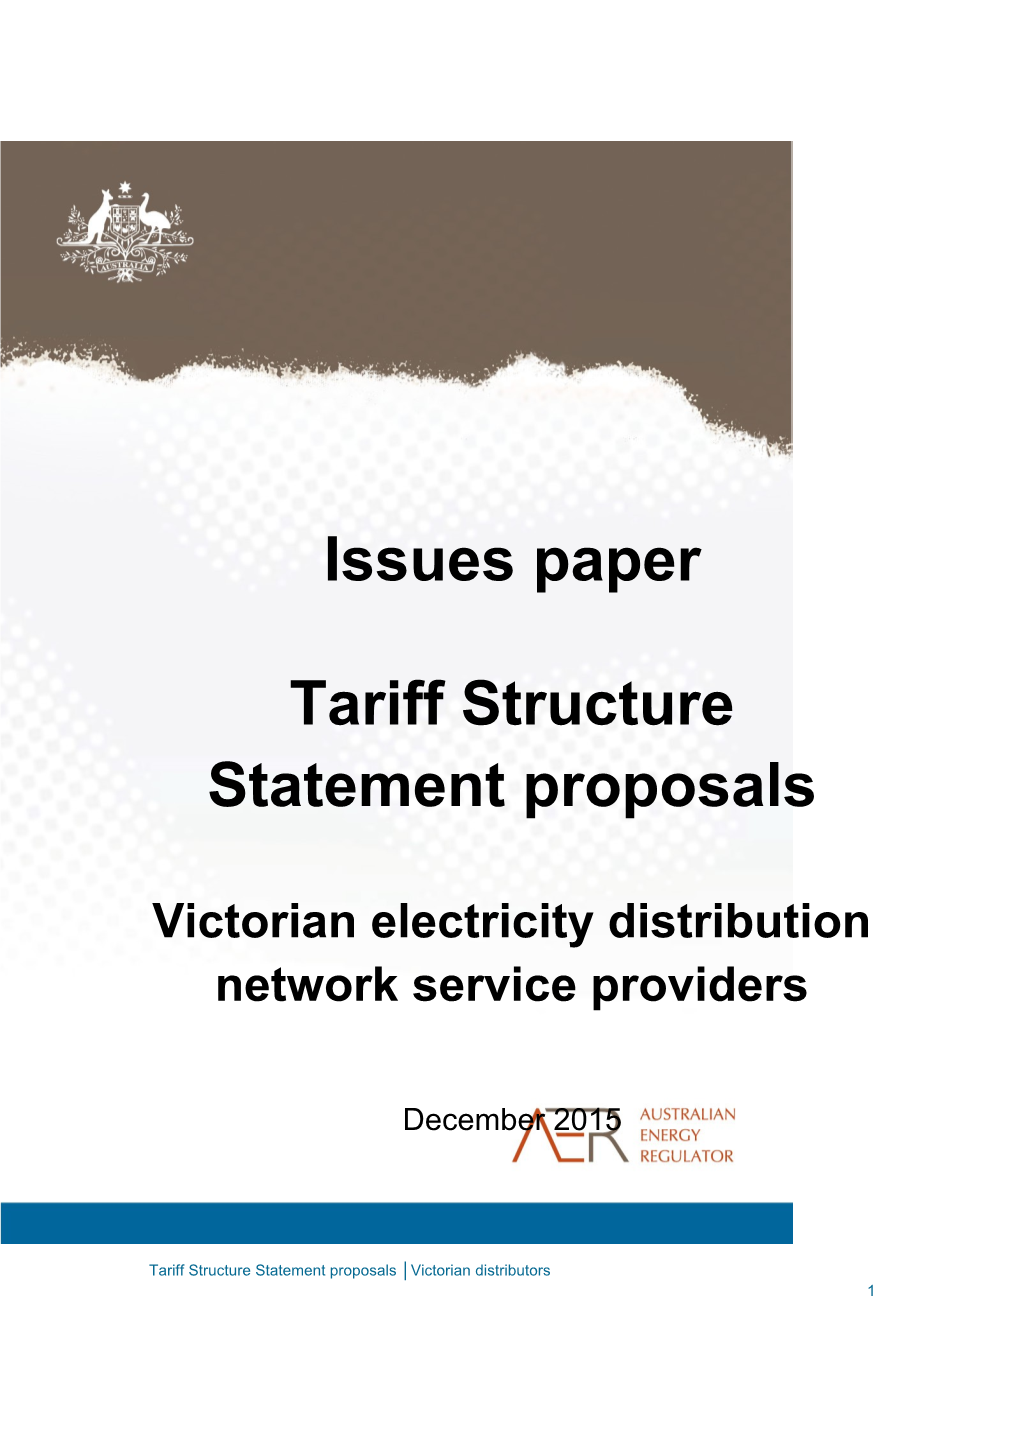 Tariff Structure Statement Proposals